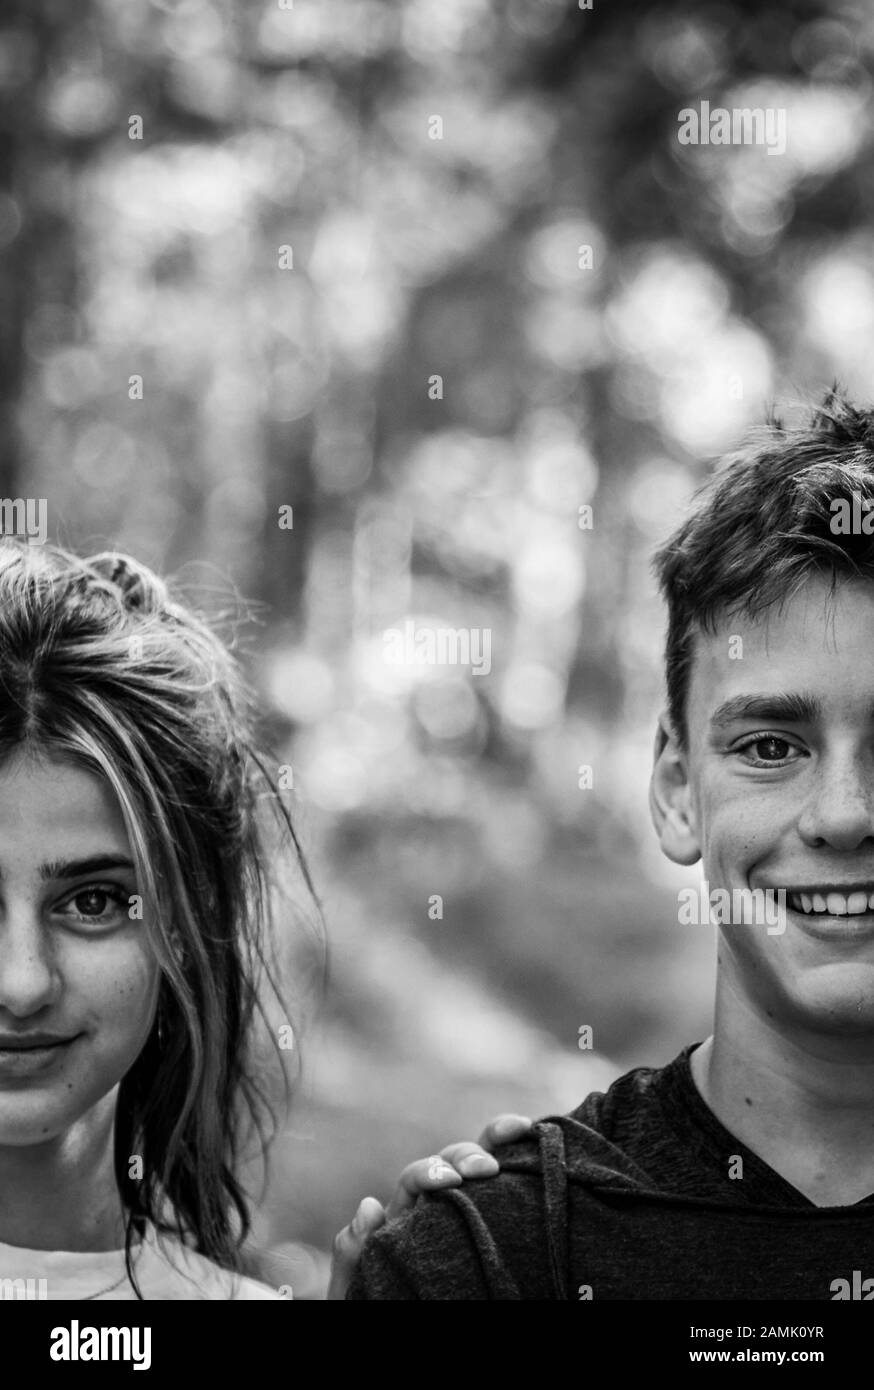 Bianco e nero, ritratto creativo di teen boy e ragazza, fratello e sorella. Foto Stock